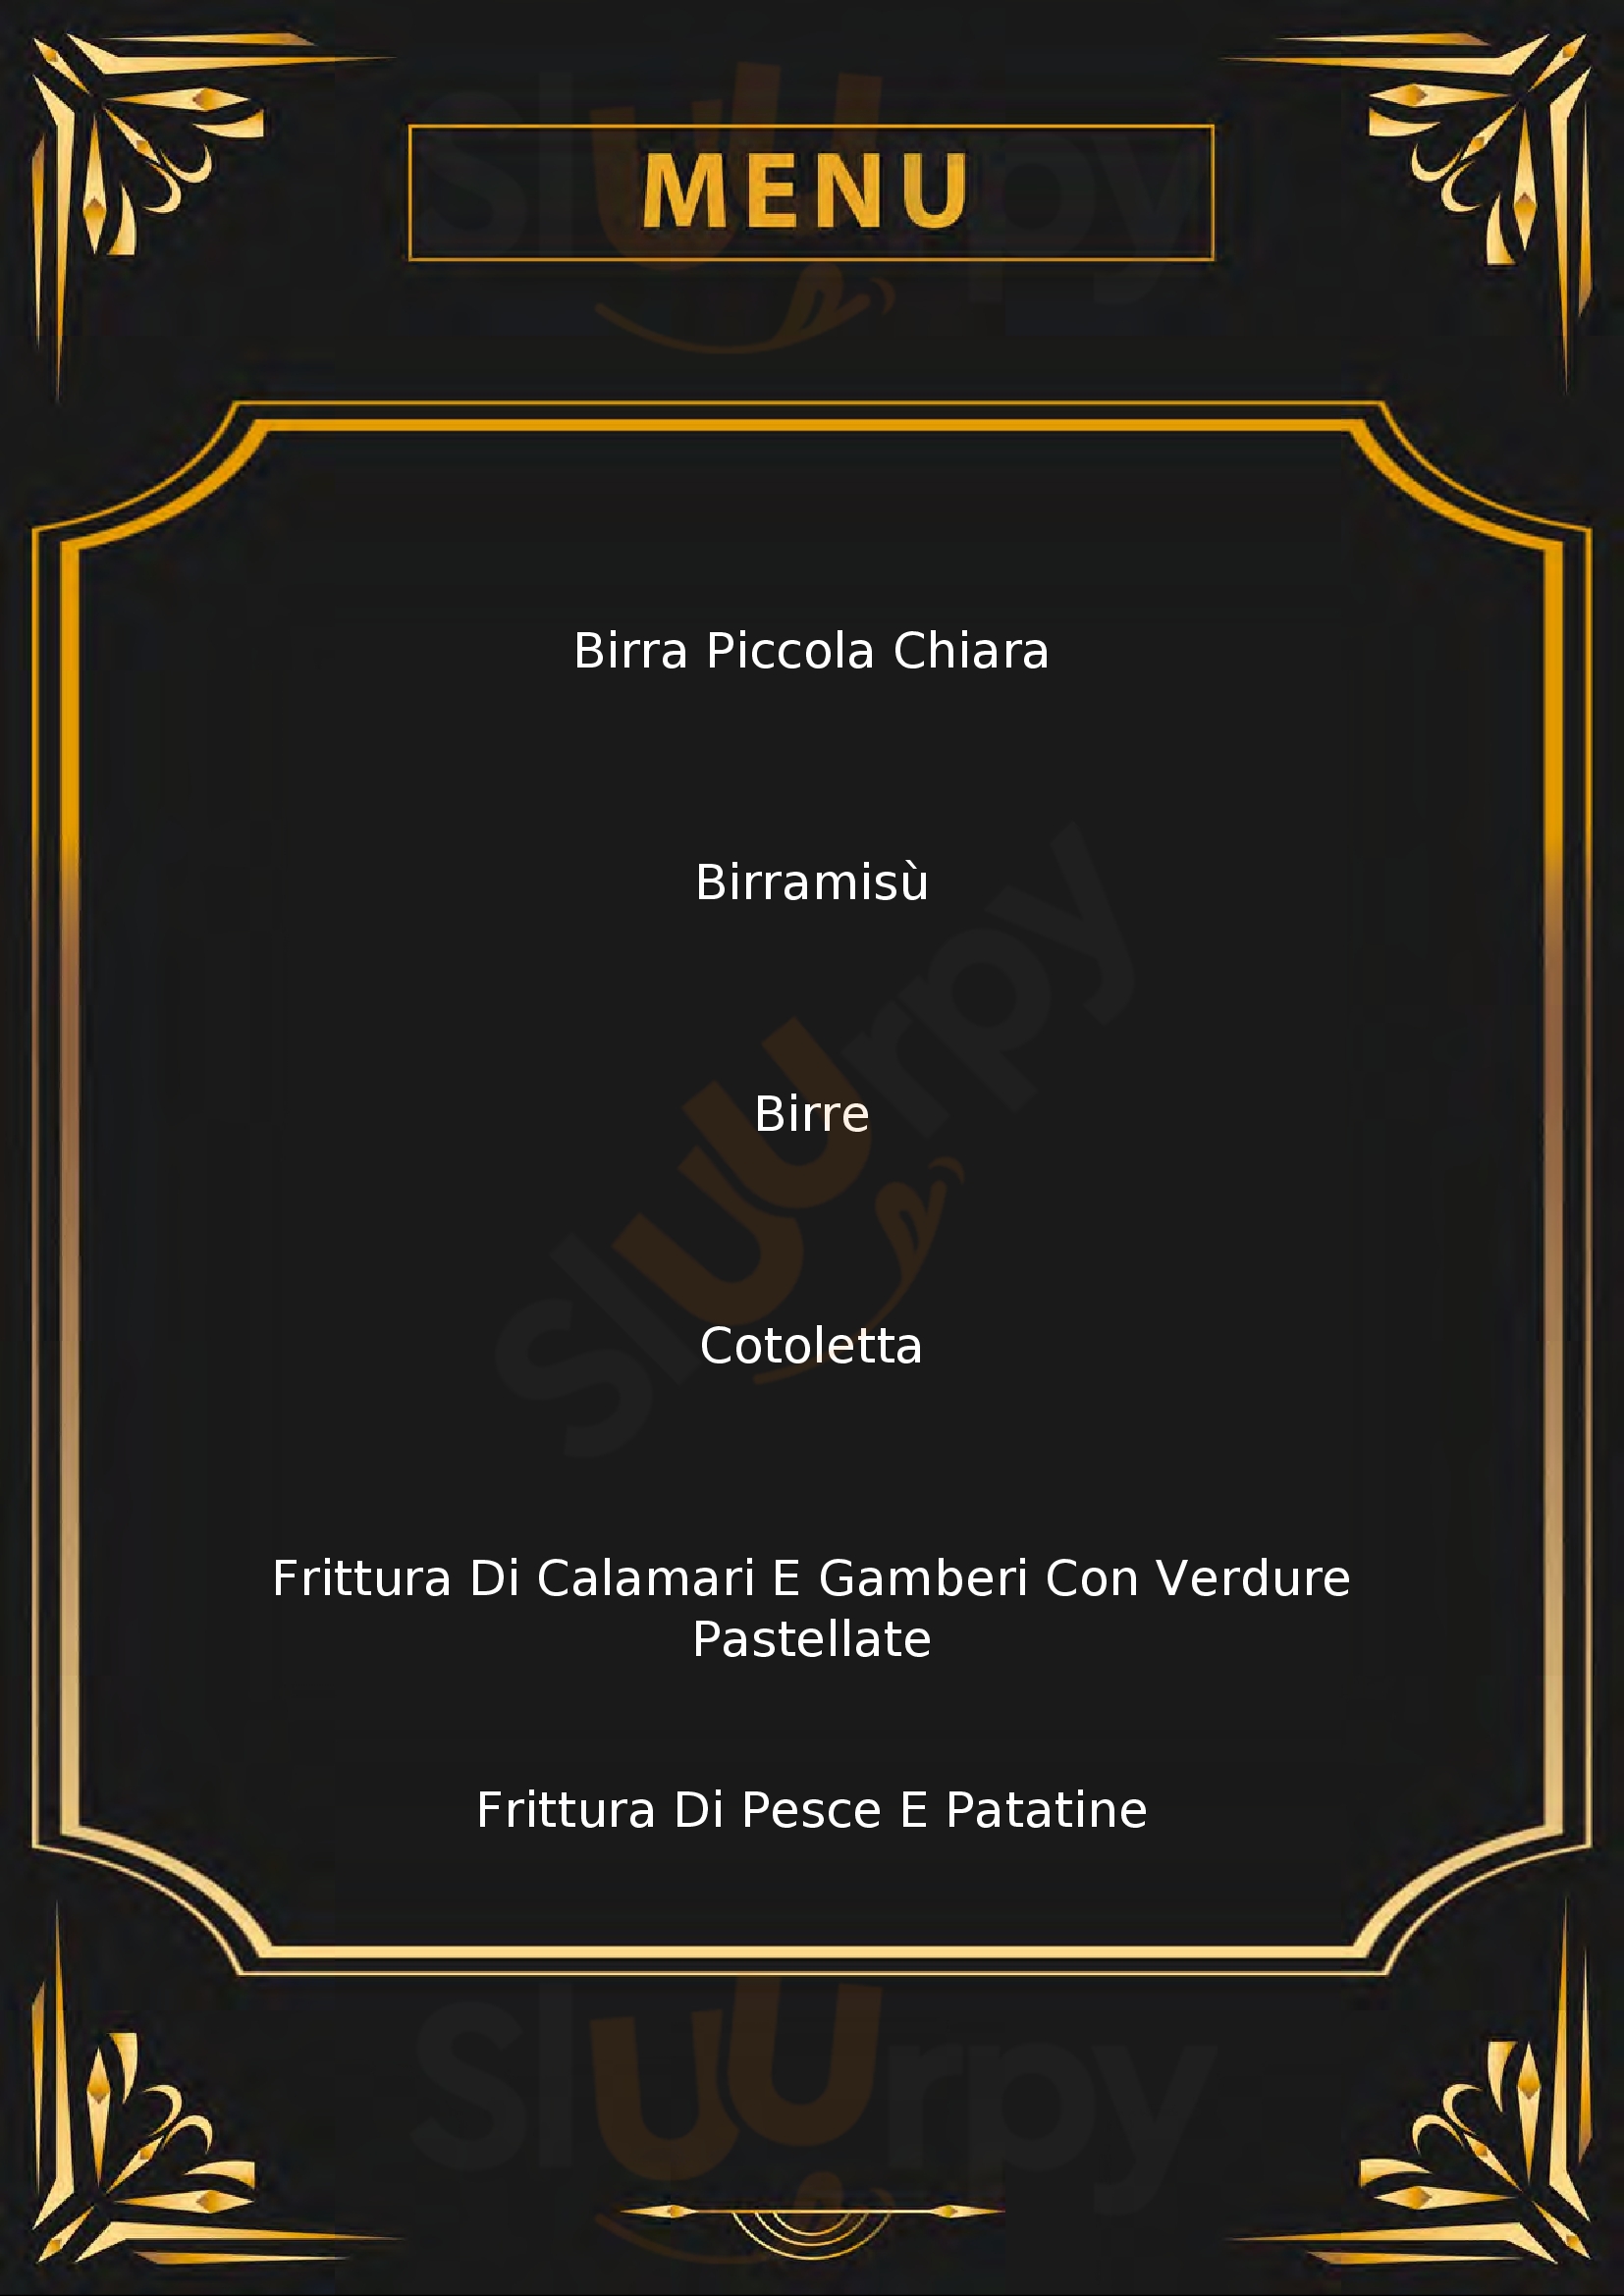 The Birra San Vittore Olona menù 1 pagina